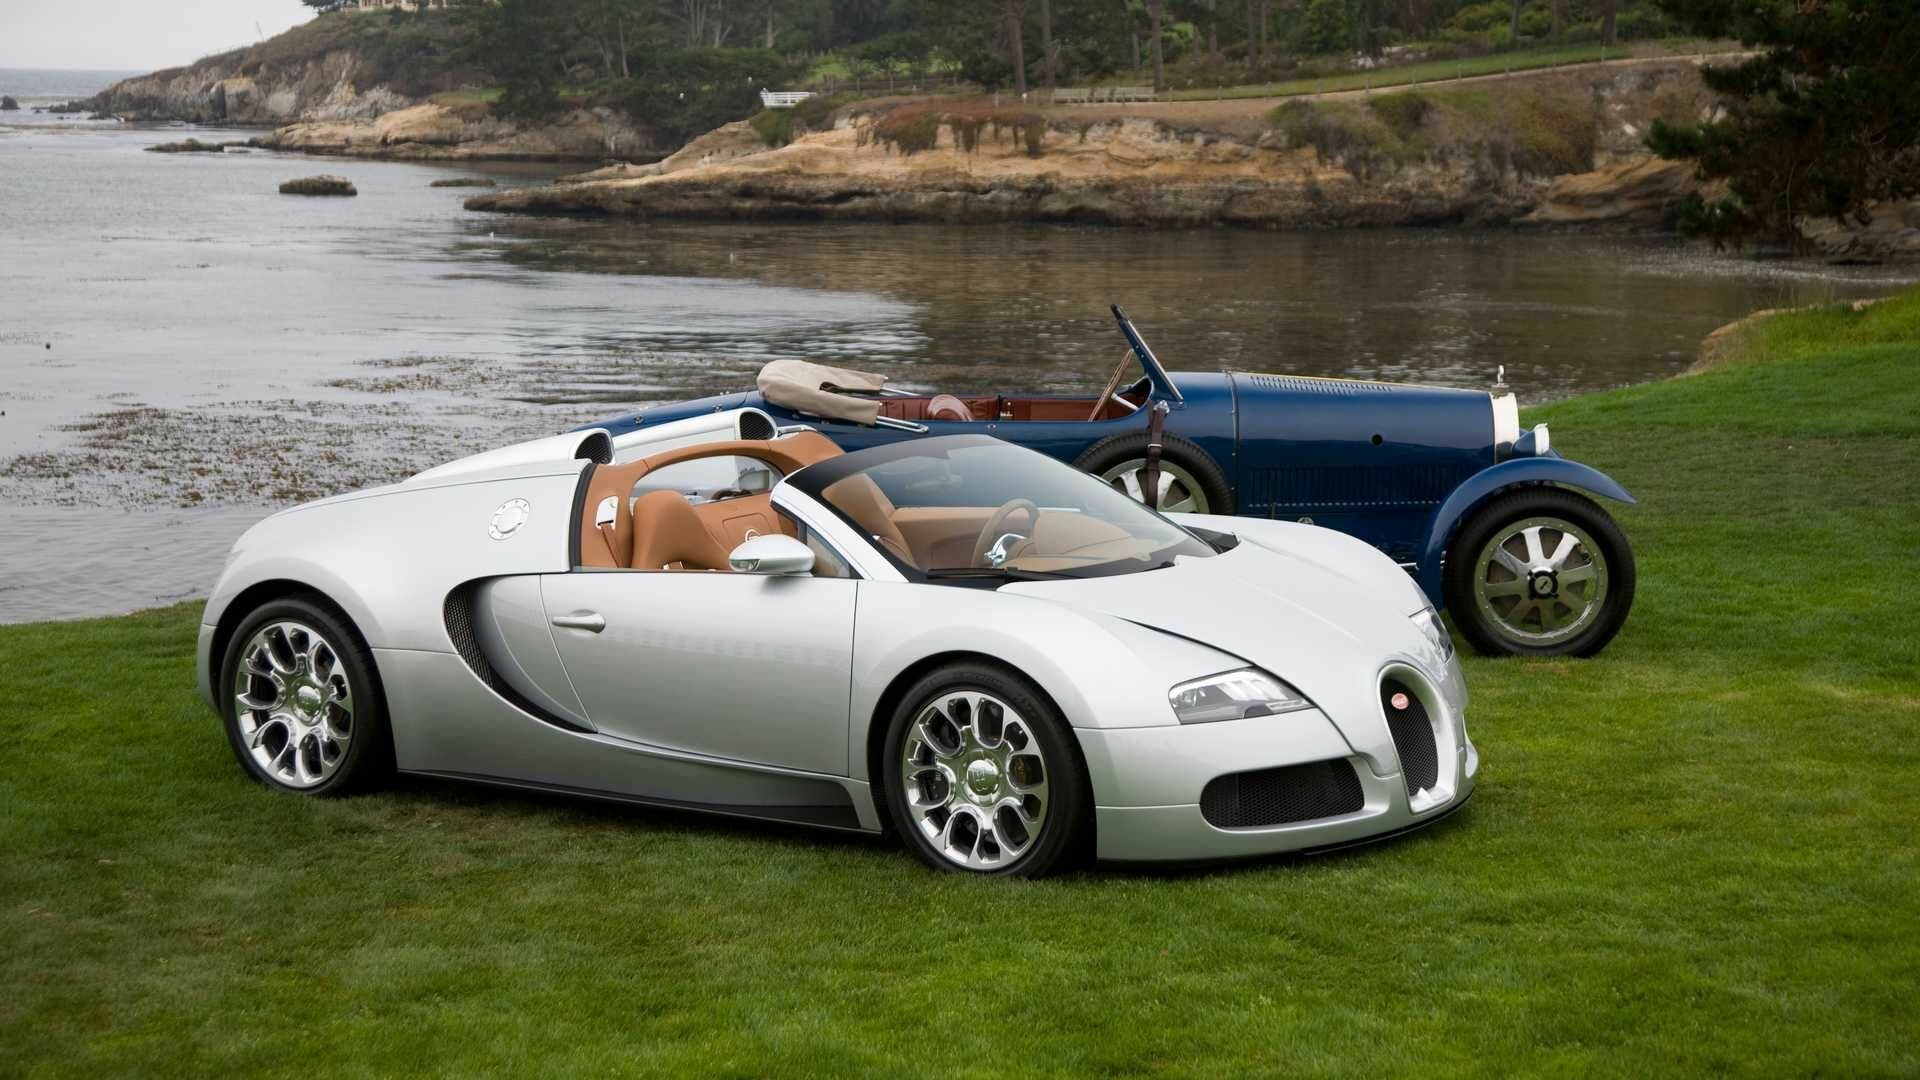 Взгляните на уникальный прототип Bugatti Veyron — его восстанавливали четыре месяца